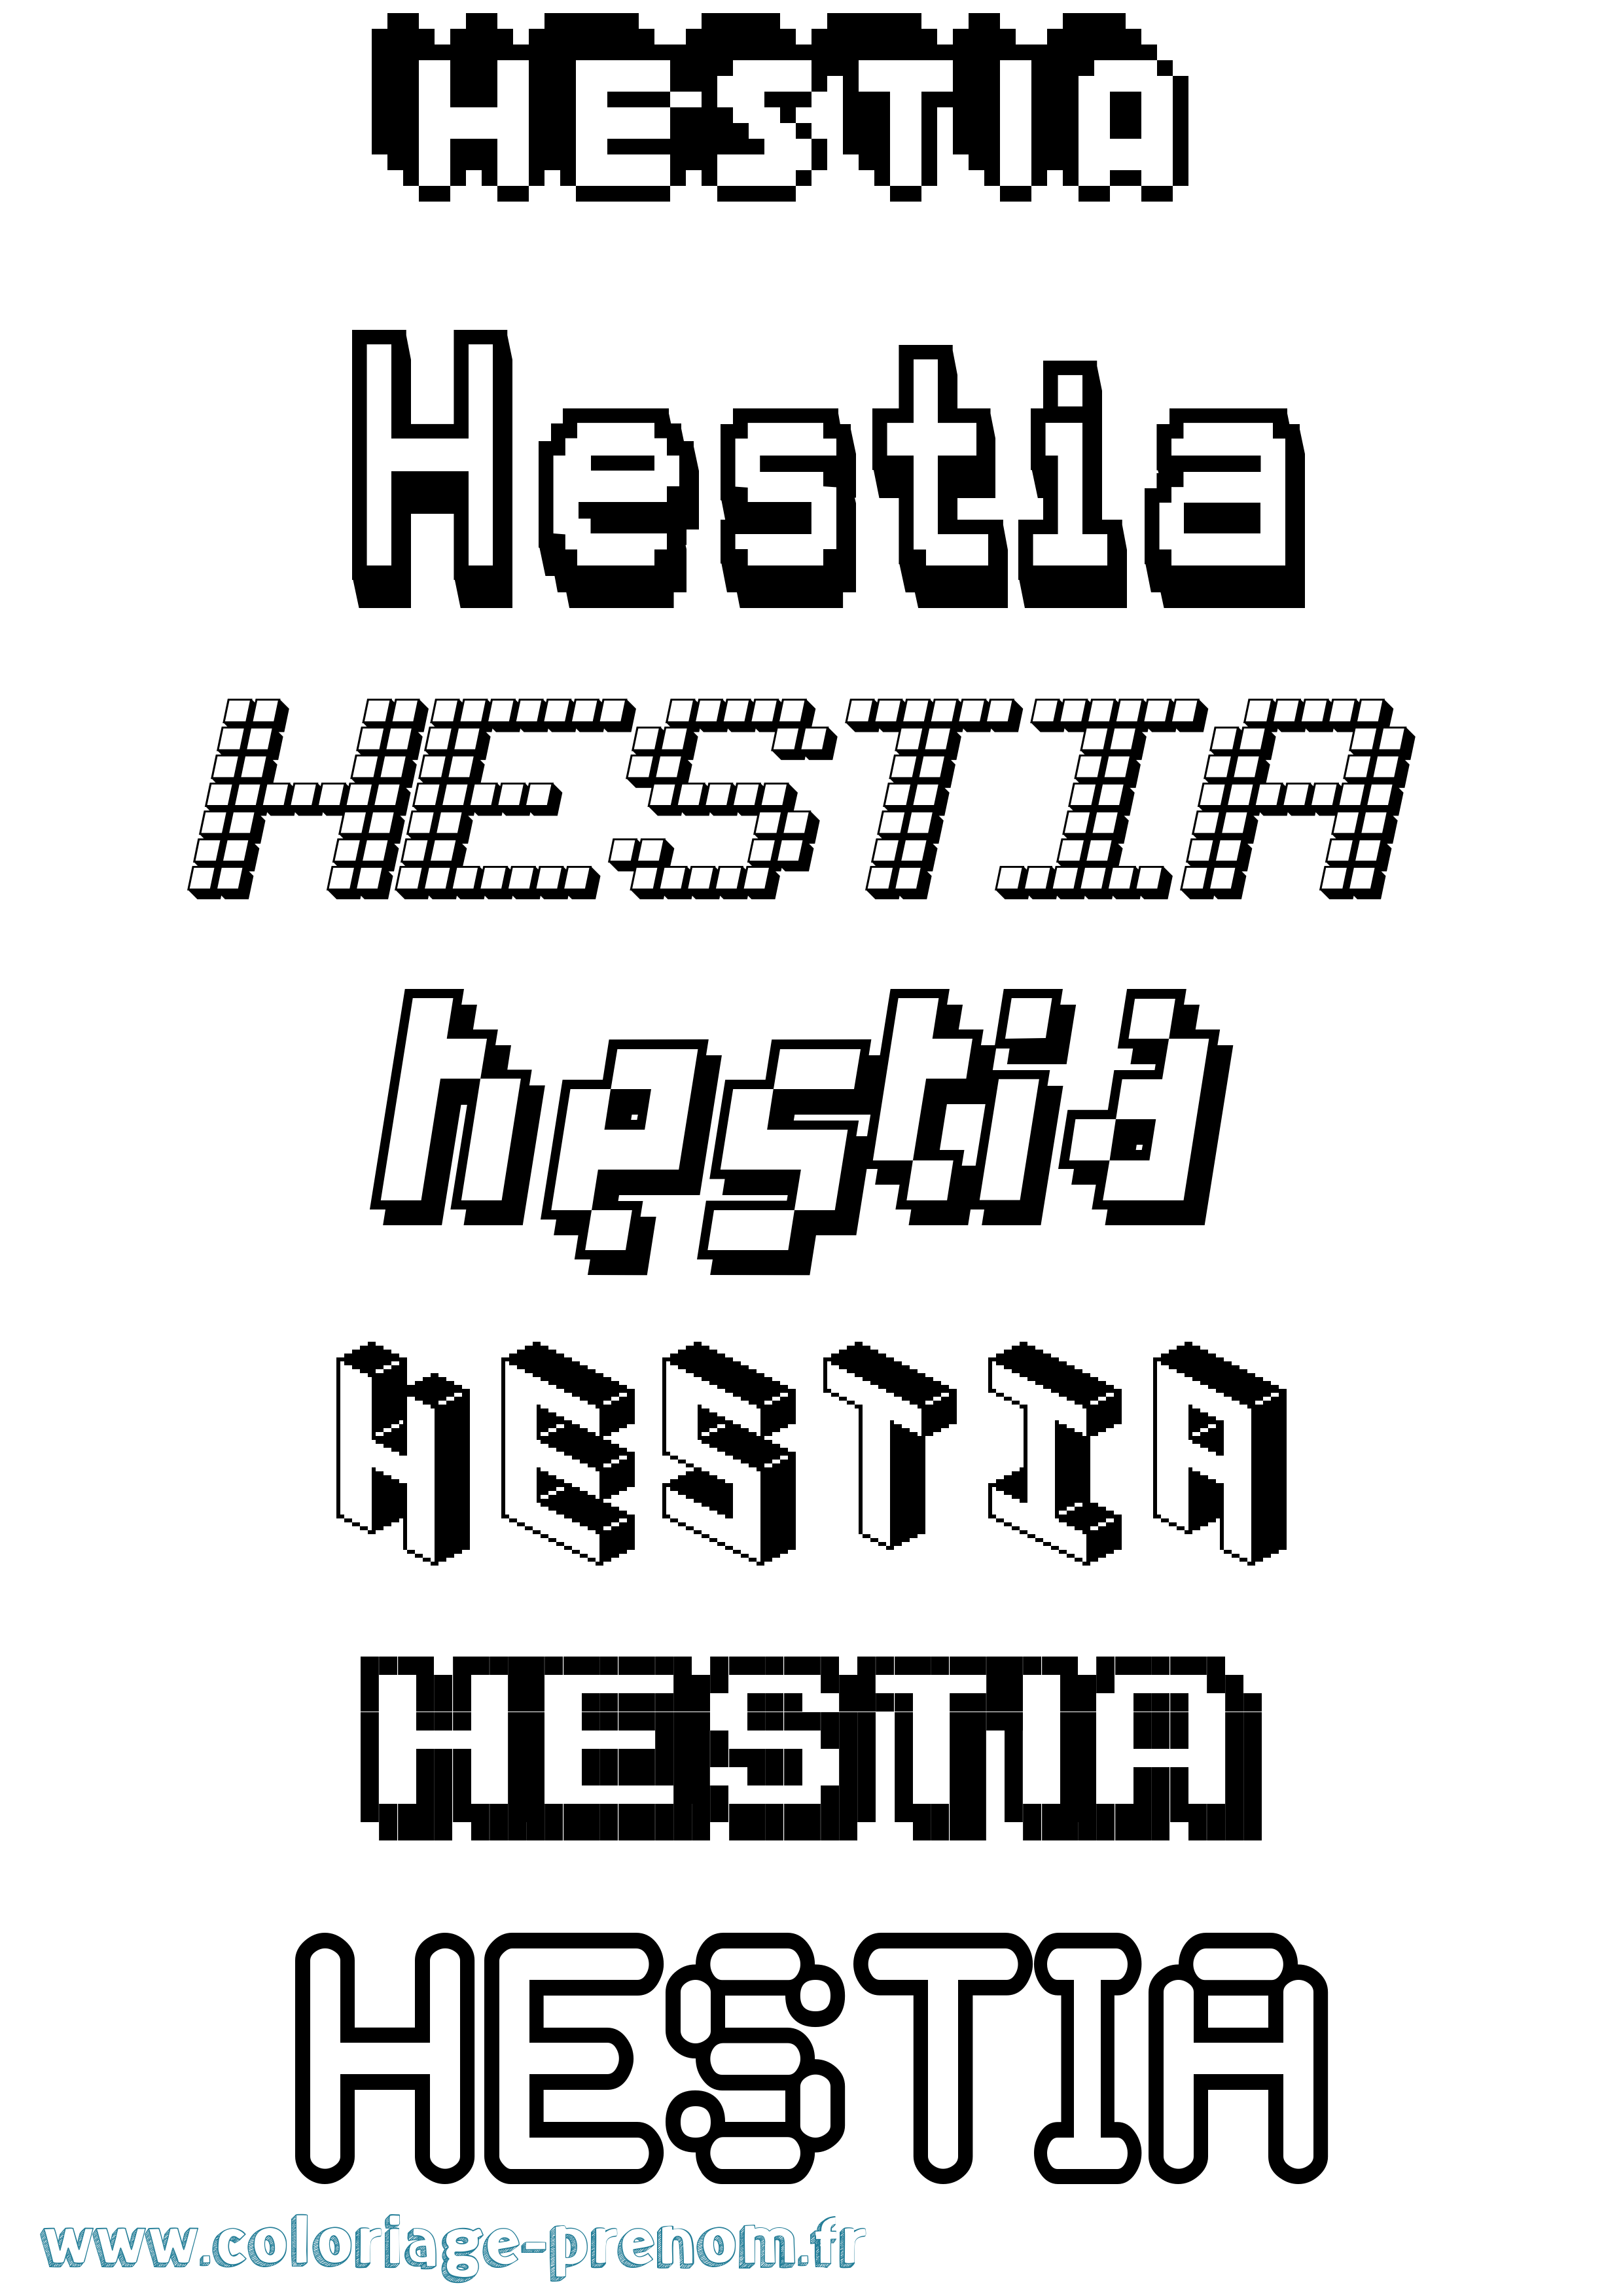 Coloriage prénom Hestia Pixel